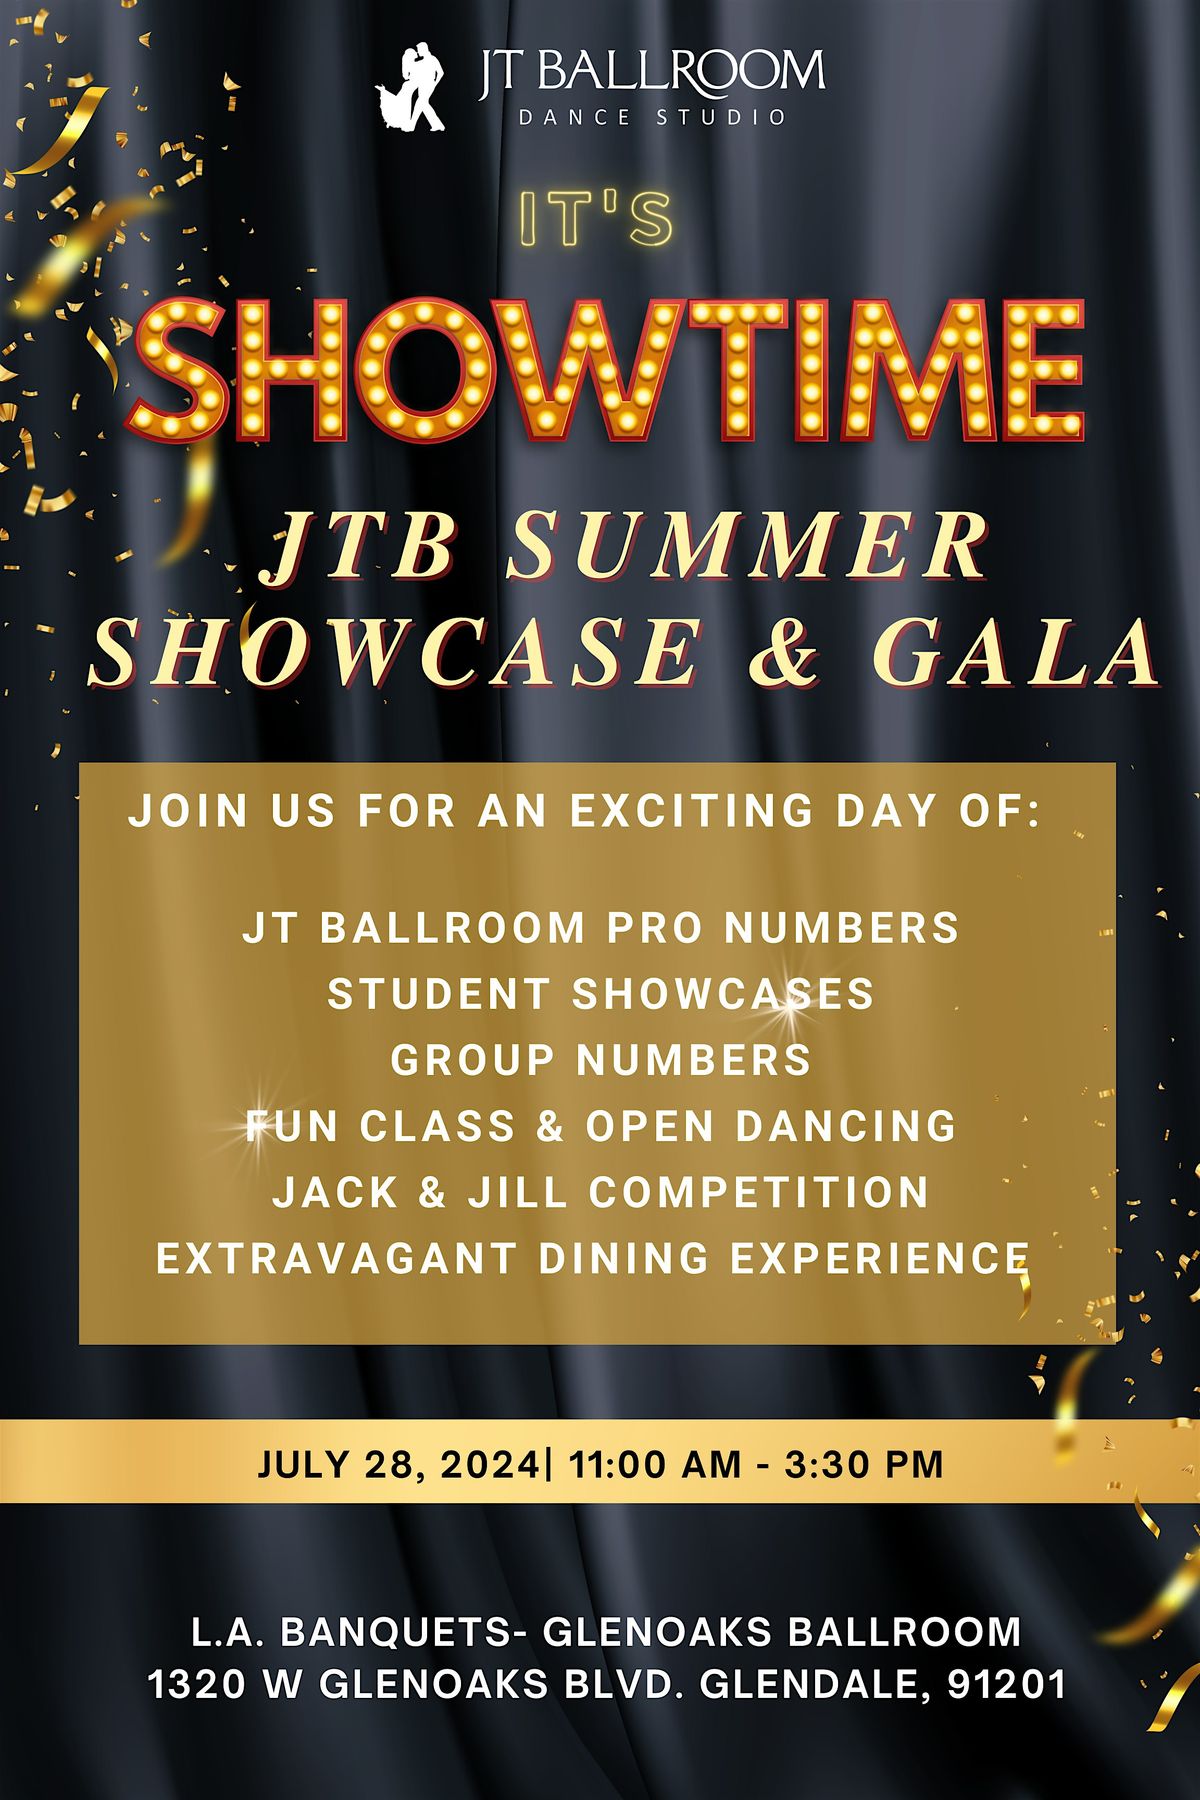 JT Ballroom Summer Showcase & Gala